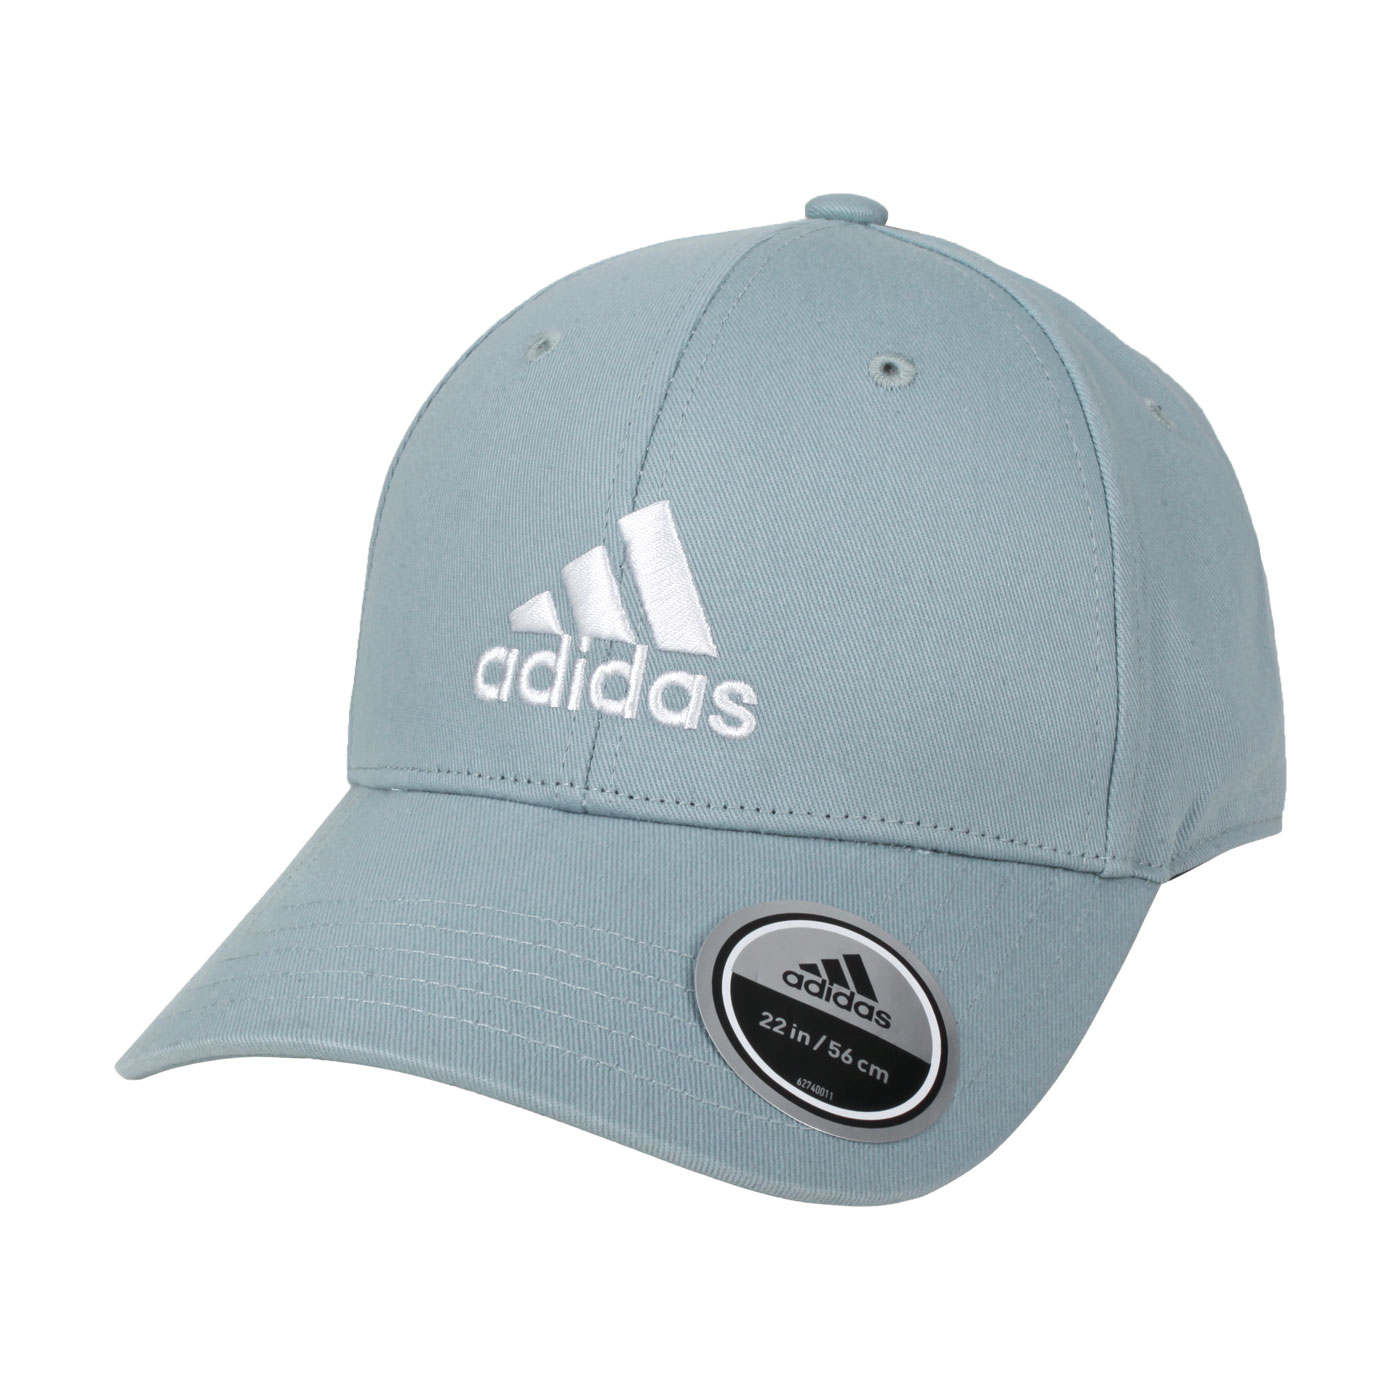 ADIDAS 運動帽 HD7234 - 湖水藍白